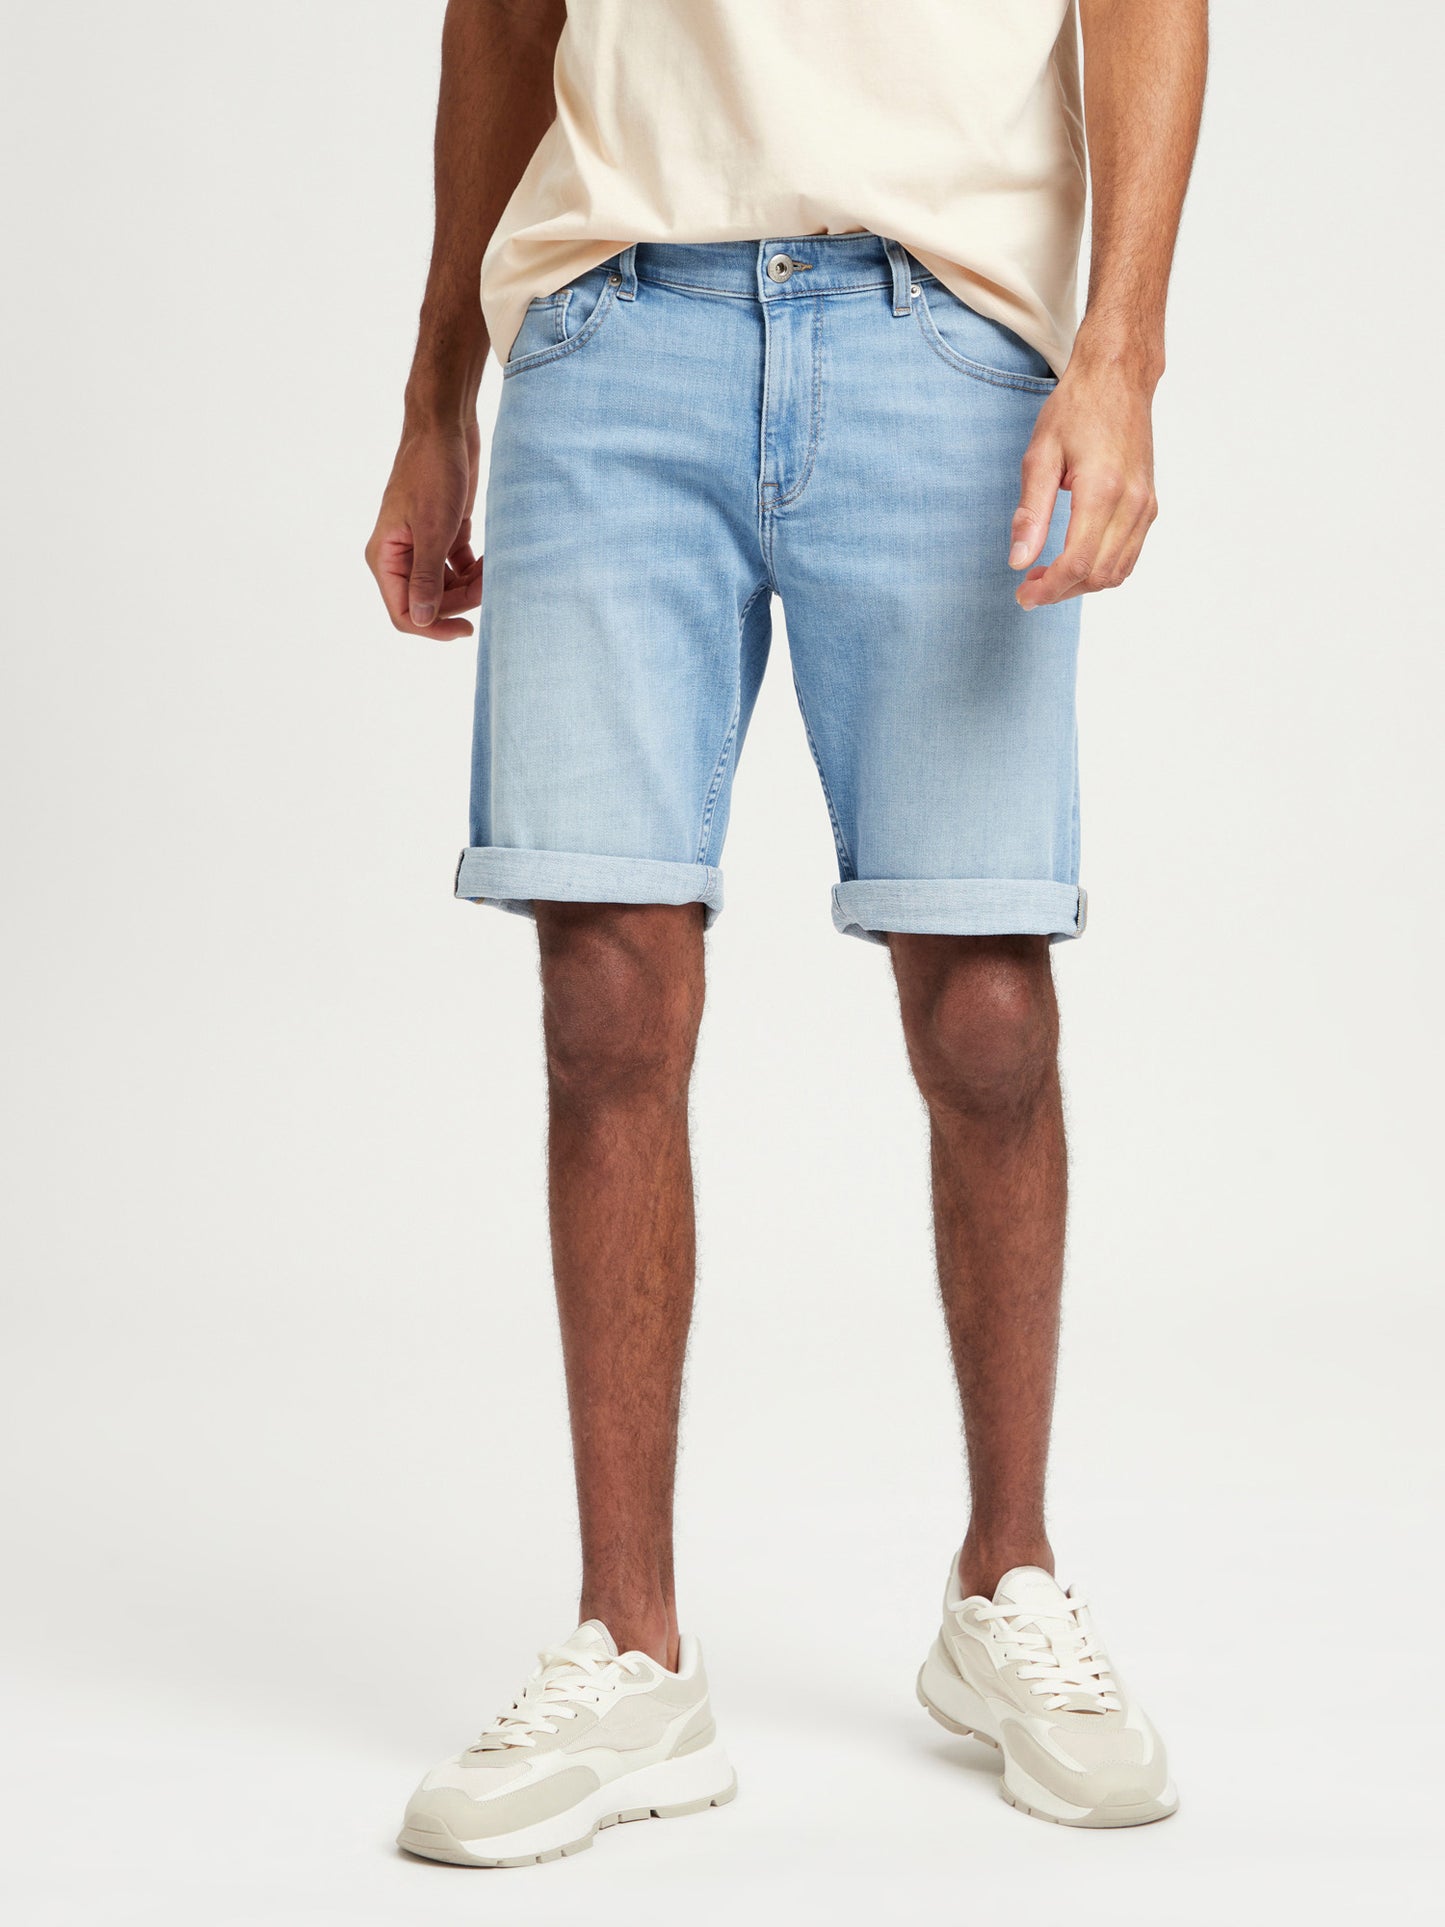 Leom Herren Jeans-Shorts Regular Fit hellblau